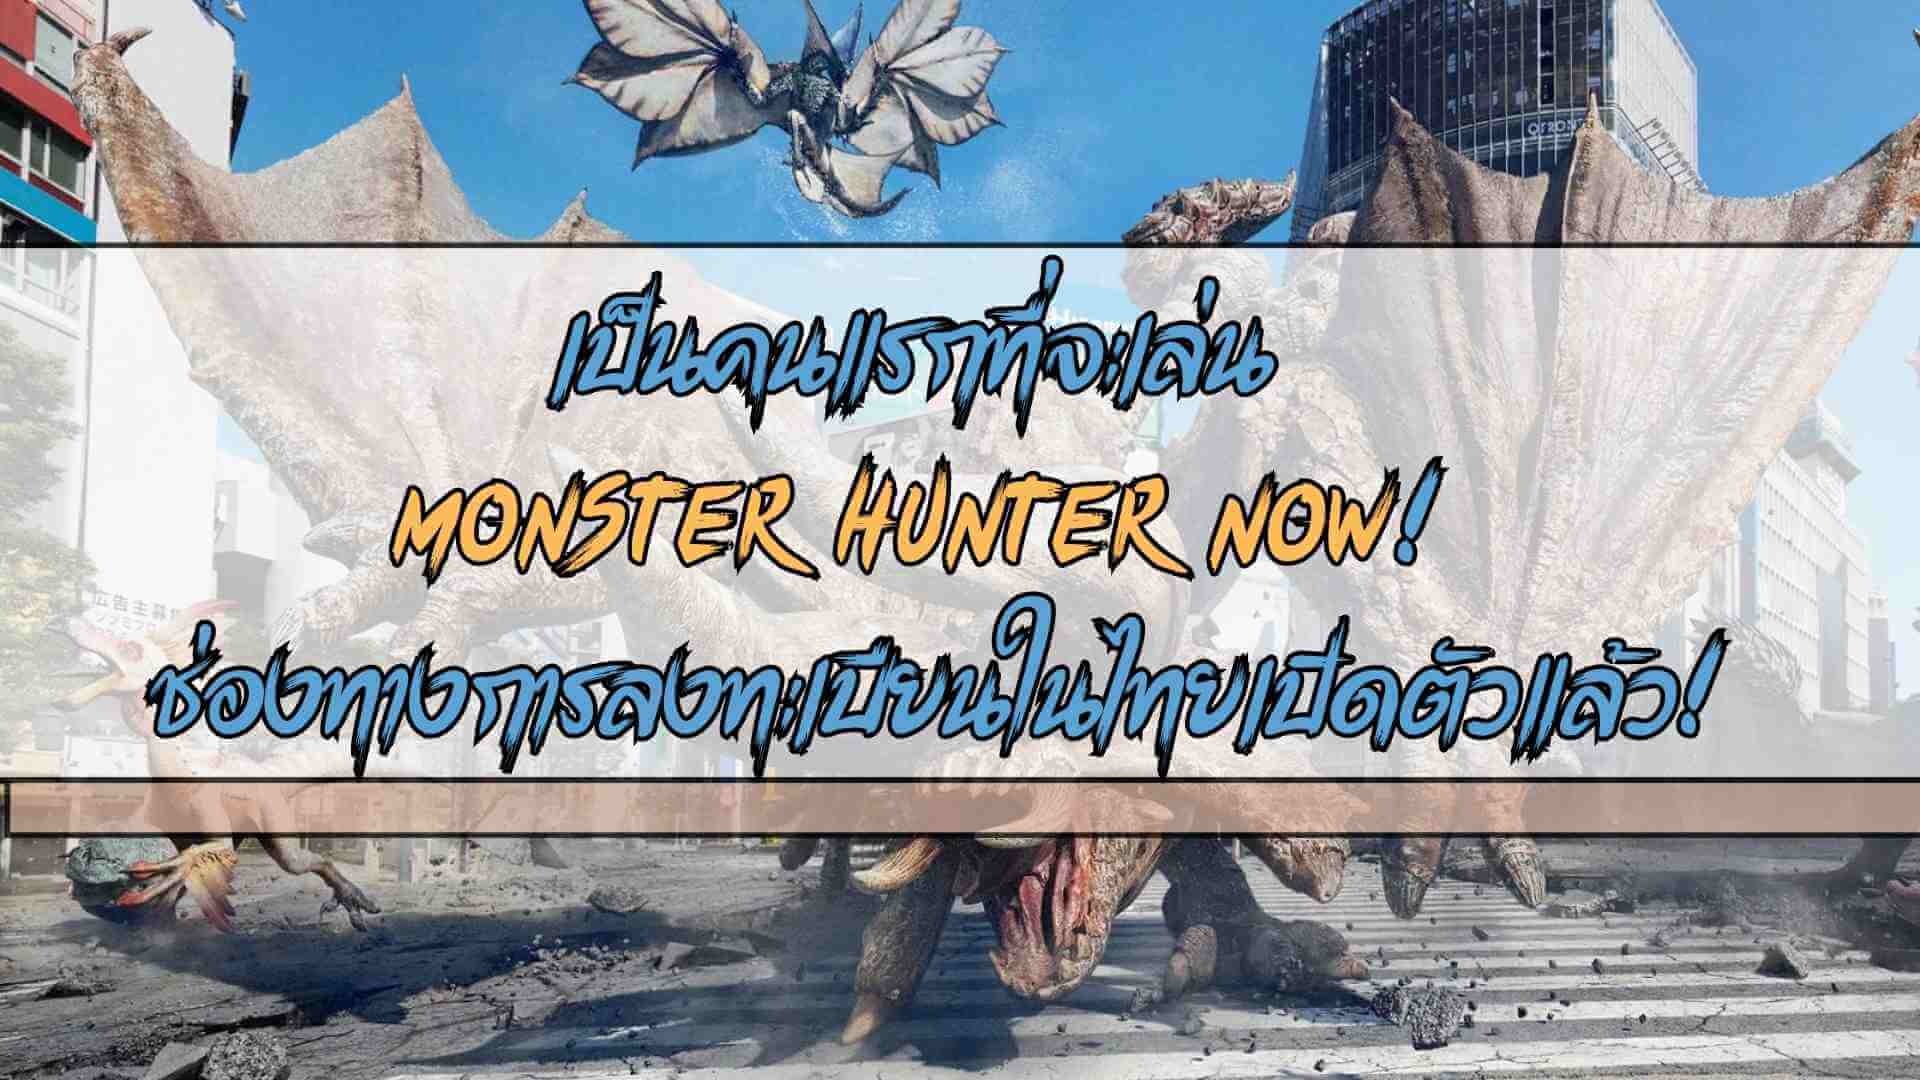 เป็นคนแรกที่จะเล่น Monster Hunter Now! ช่องทางการลงทะเบียนในไทยเปิดตัวแล้ว! มาล่าสัตว์ประหลาดขณะเดิน!